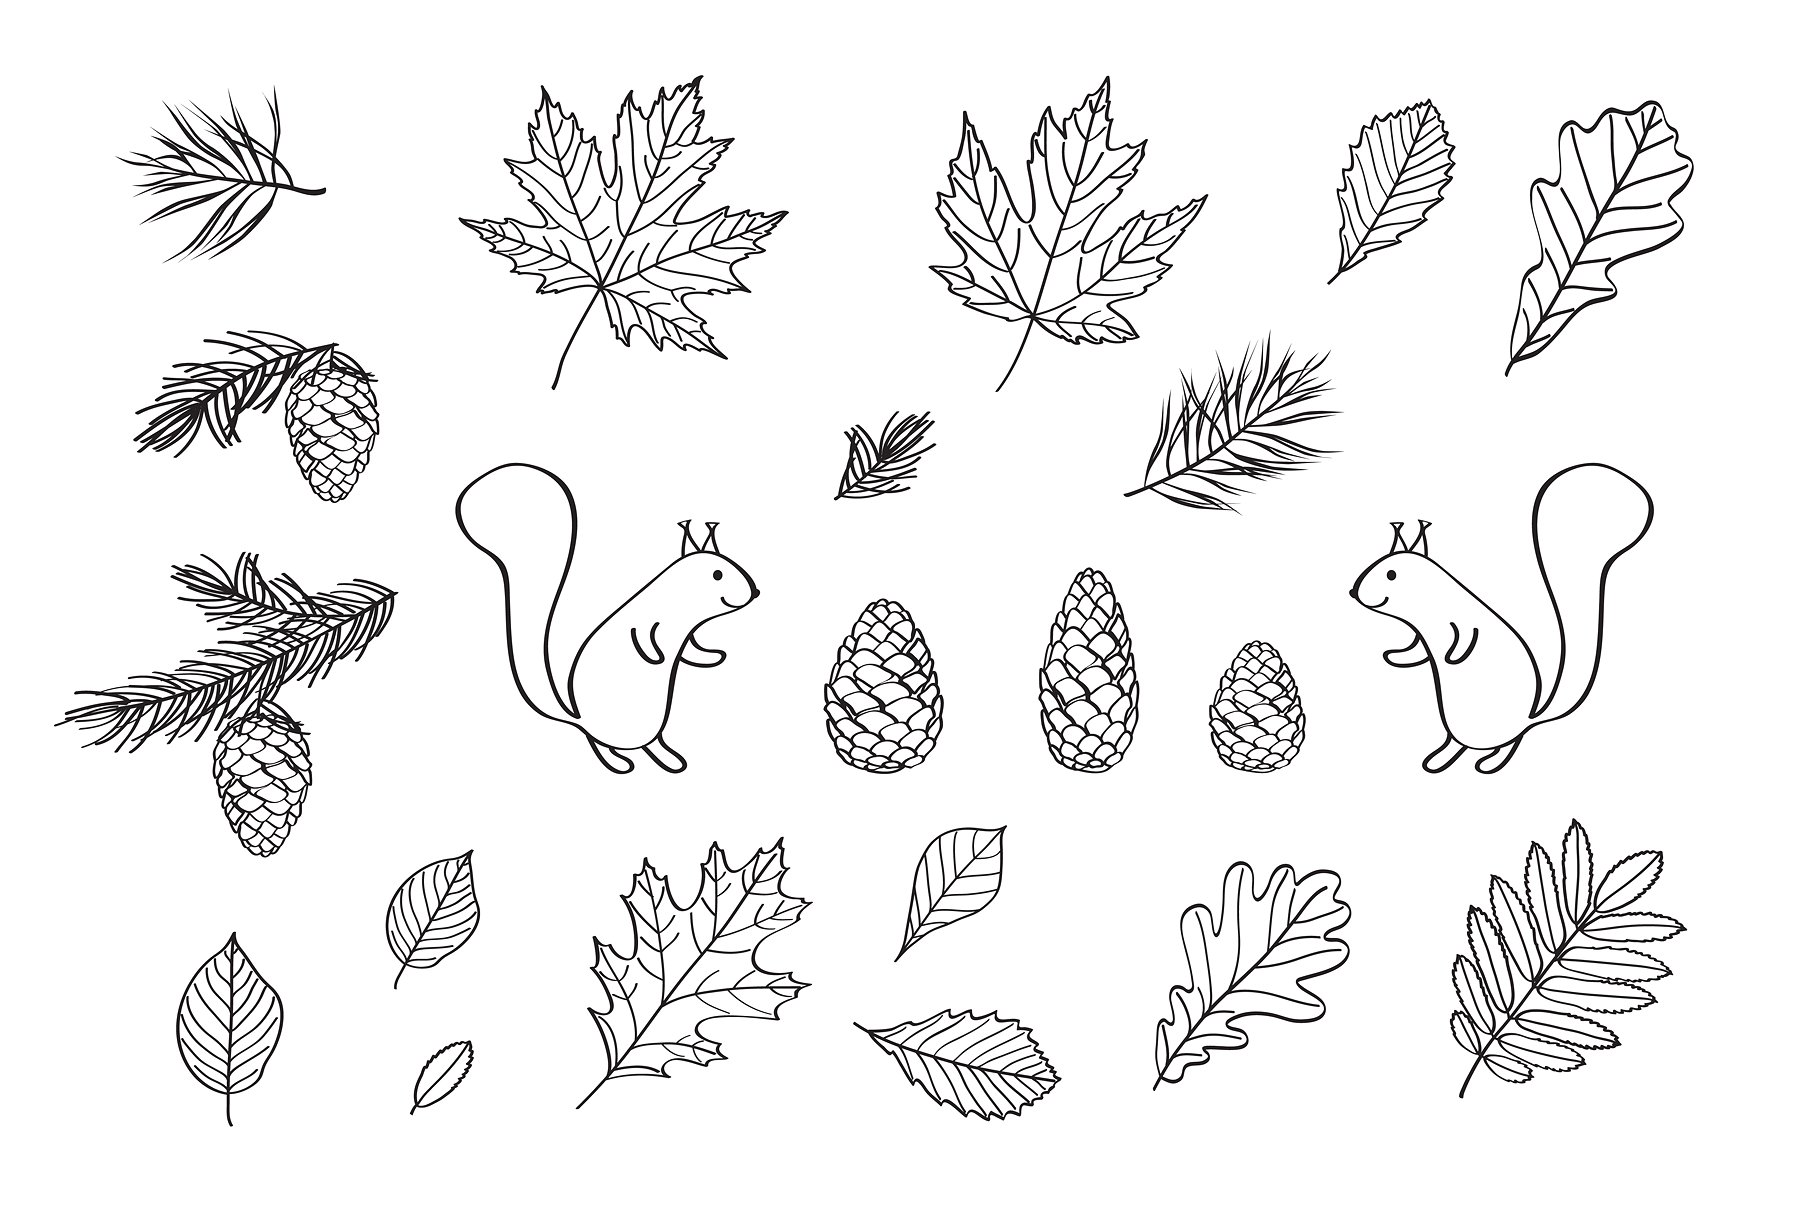 多款手绘叶子元素图案合集 Hand Drawn Leaves Of Different Trees插图5